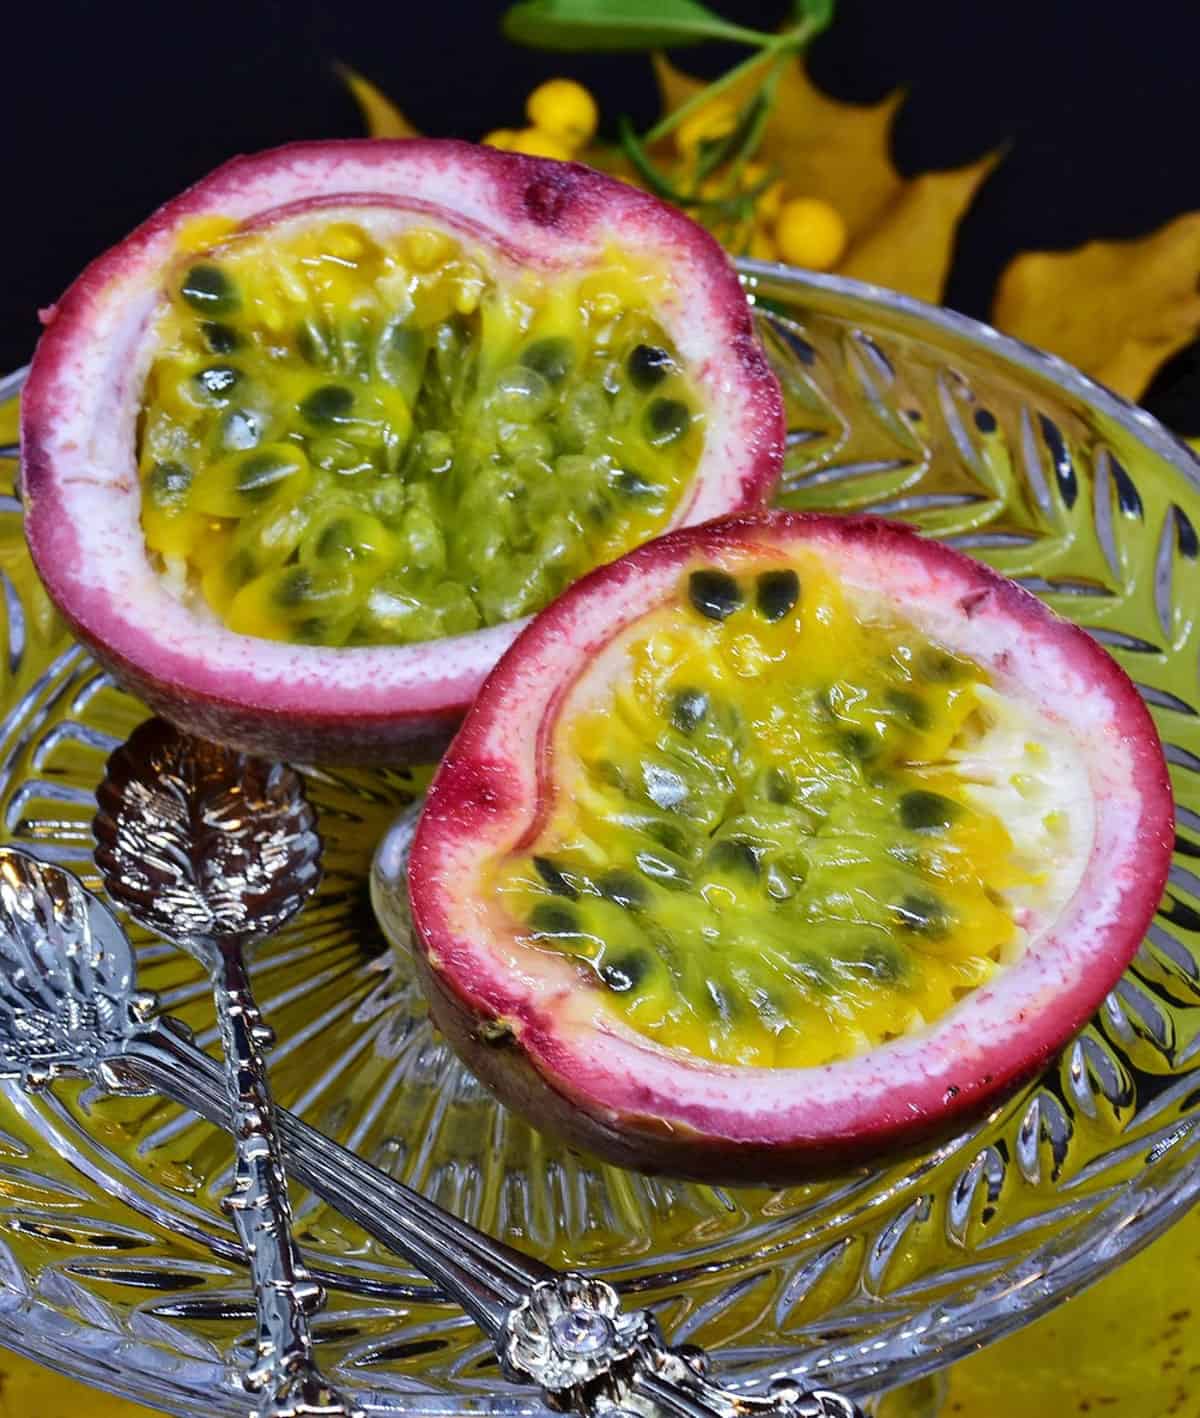 pink passionfruit cut